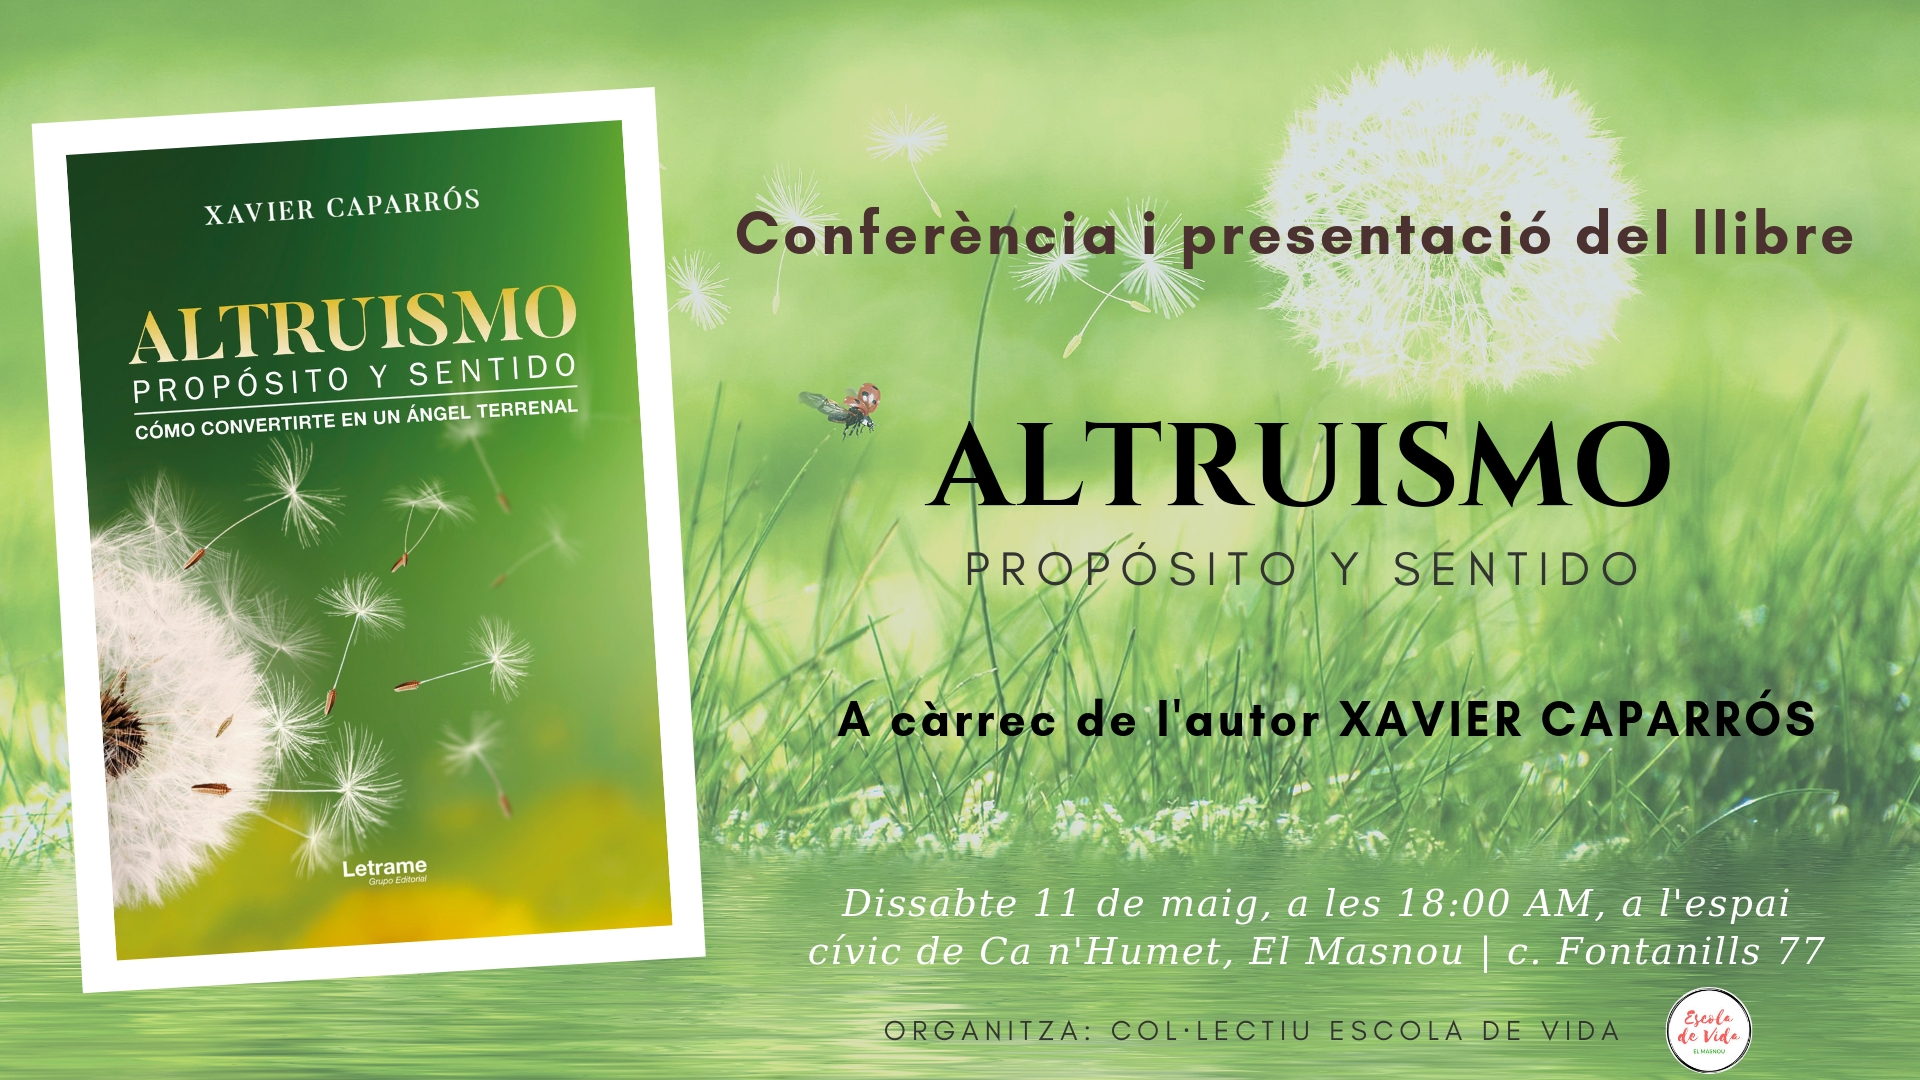 Conferència i presentació del llibre 'Altruismo: propósito y sentido'